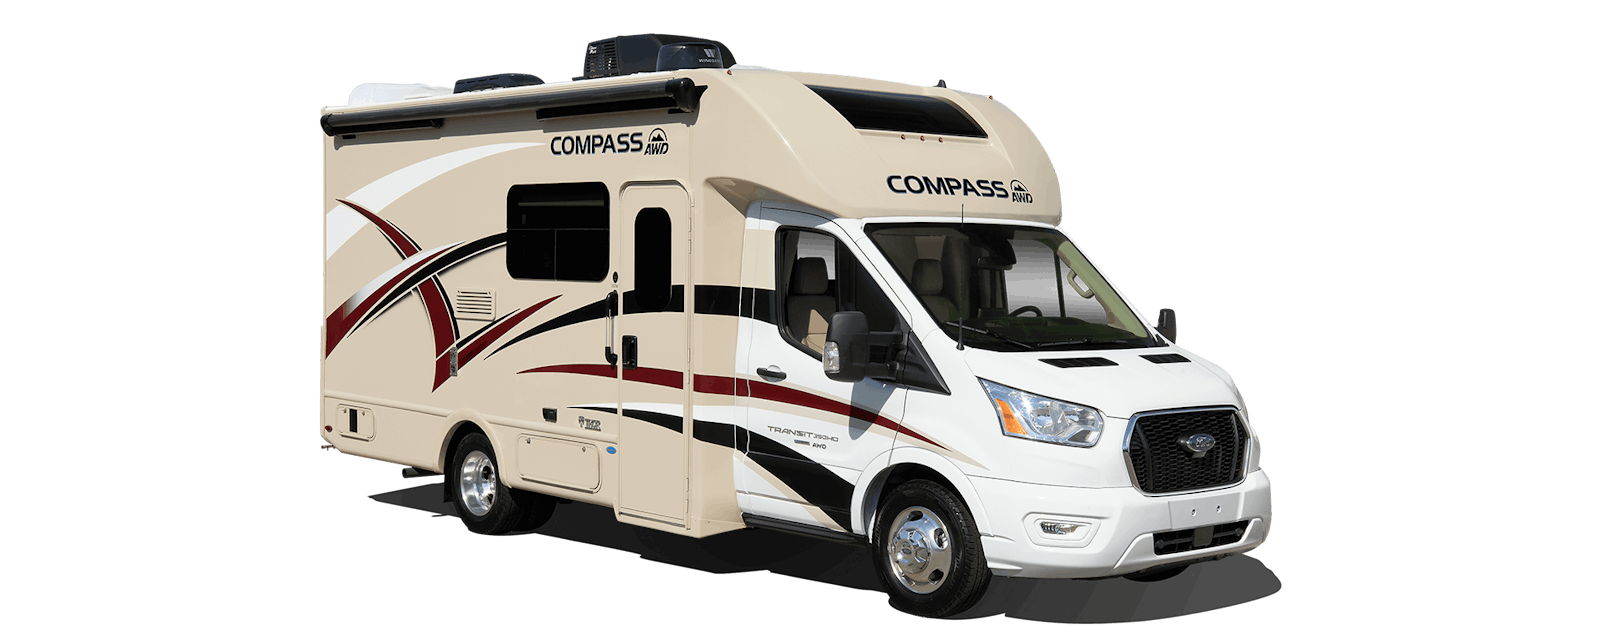 2022 Thor Compass AWD Class B+ RV - Champagne / Arcade Fire HD-Max® Exterior